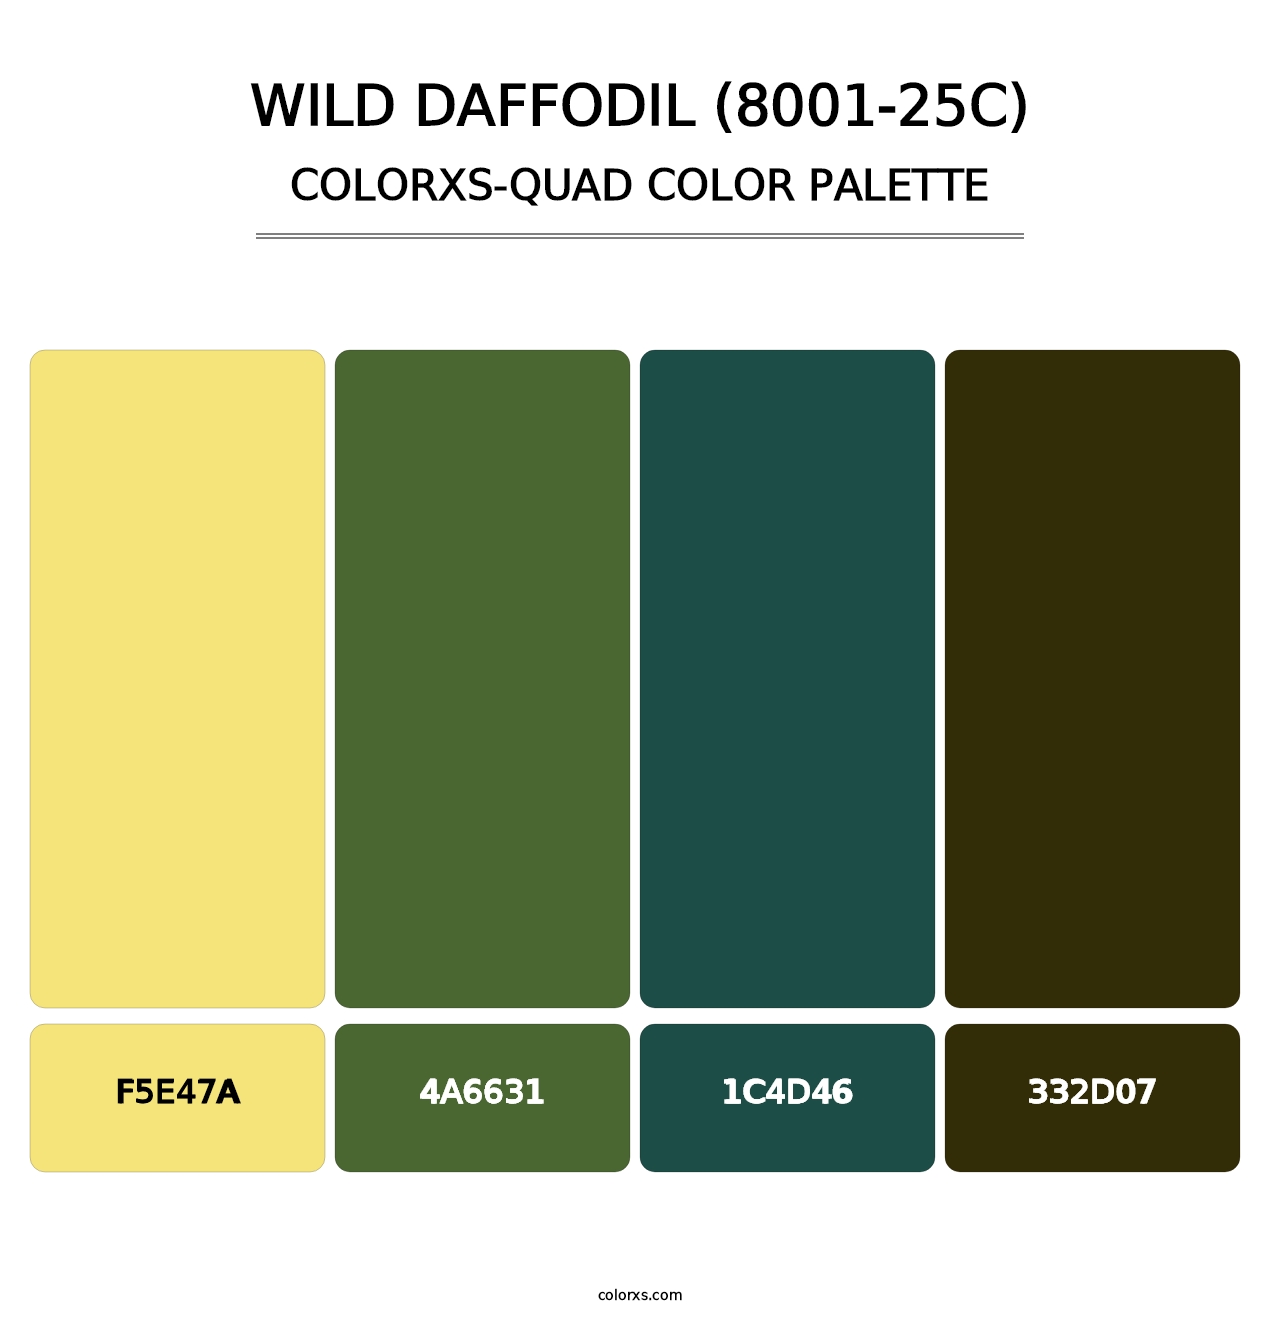 Wild Daffodil (8001-25C) - Colorxs Quad Palette